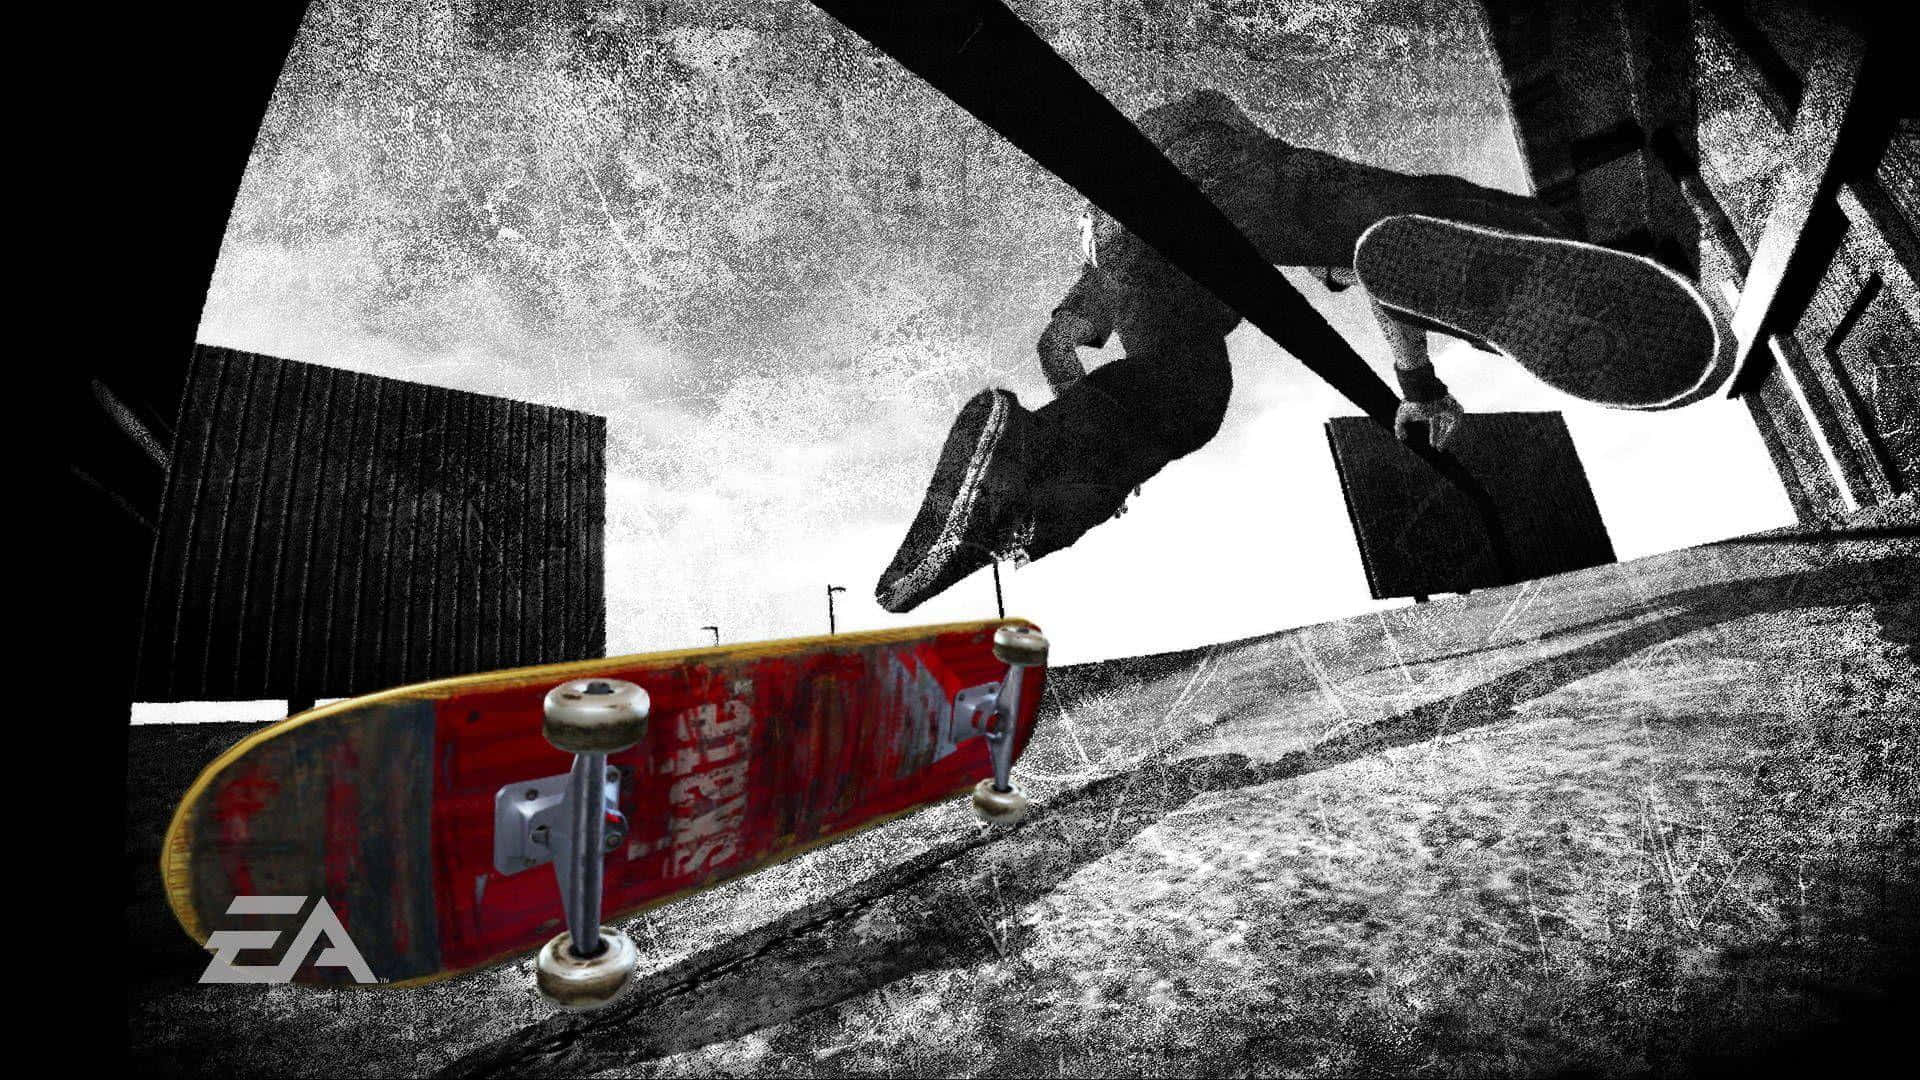 Skateboardhintergrund 1920 X 1080